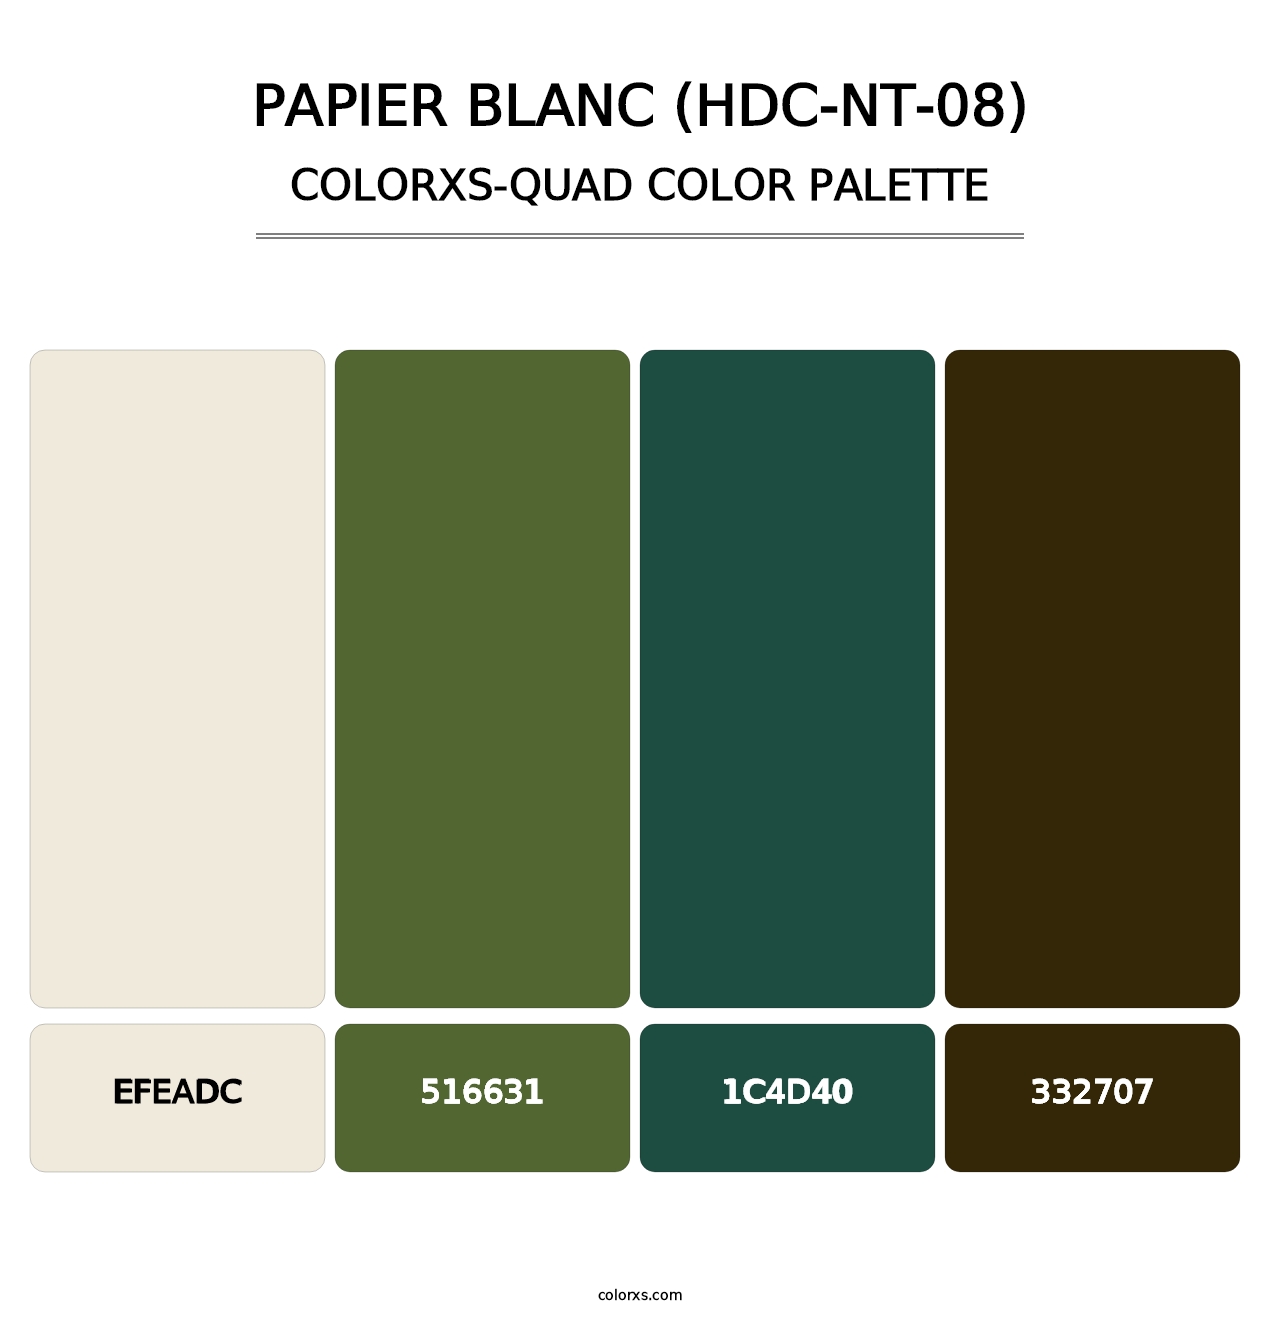 Papier Blanc (HDC-NT-08) - Colorxs Quad Palette